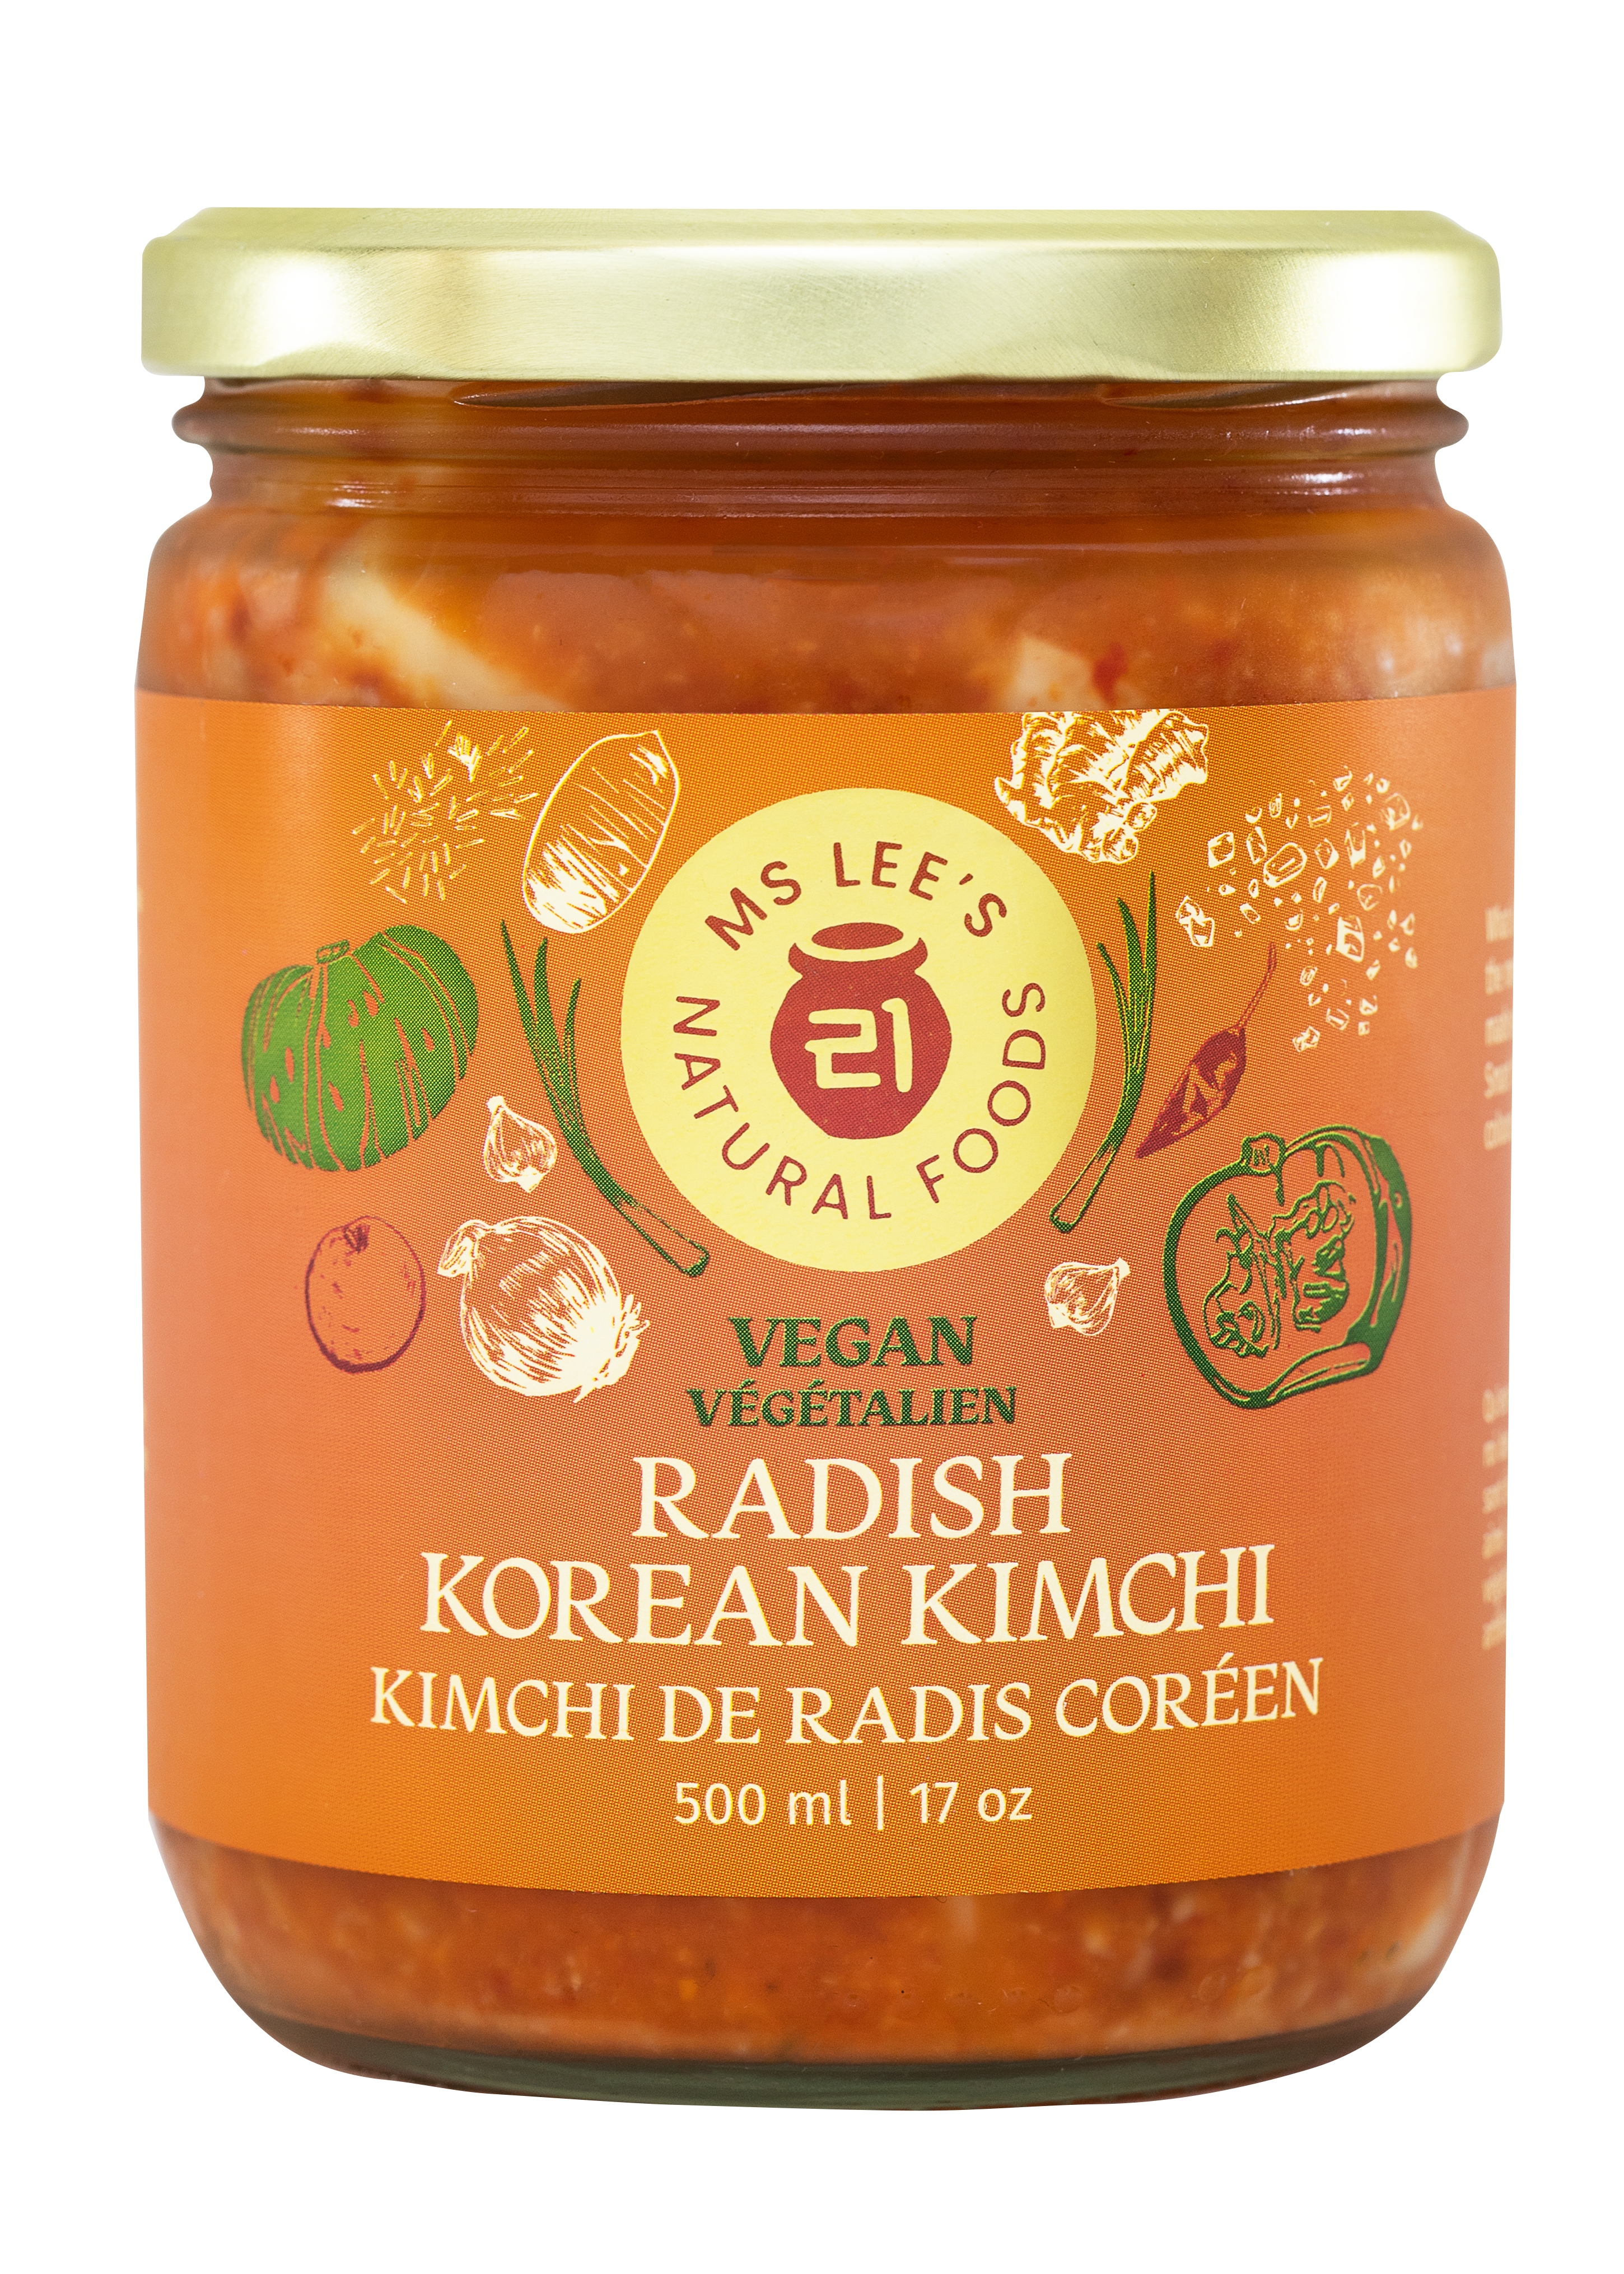 Radish Korean Kimchi Vegan